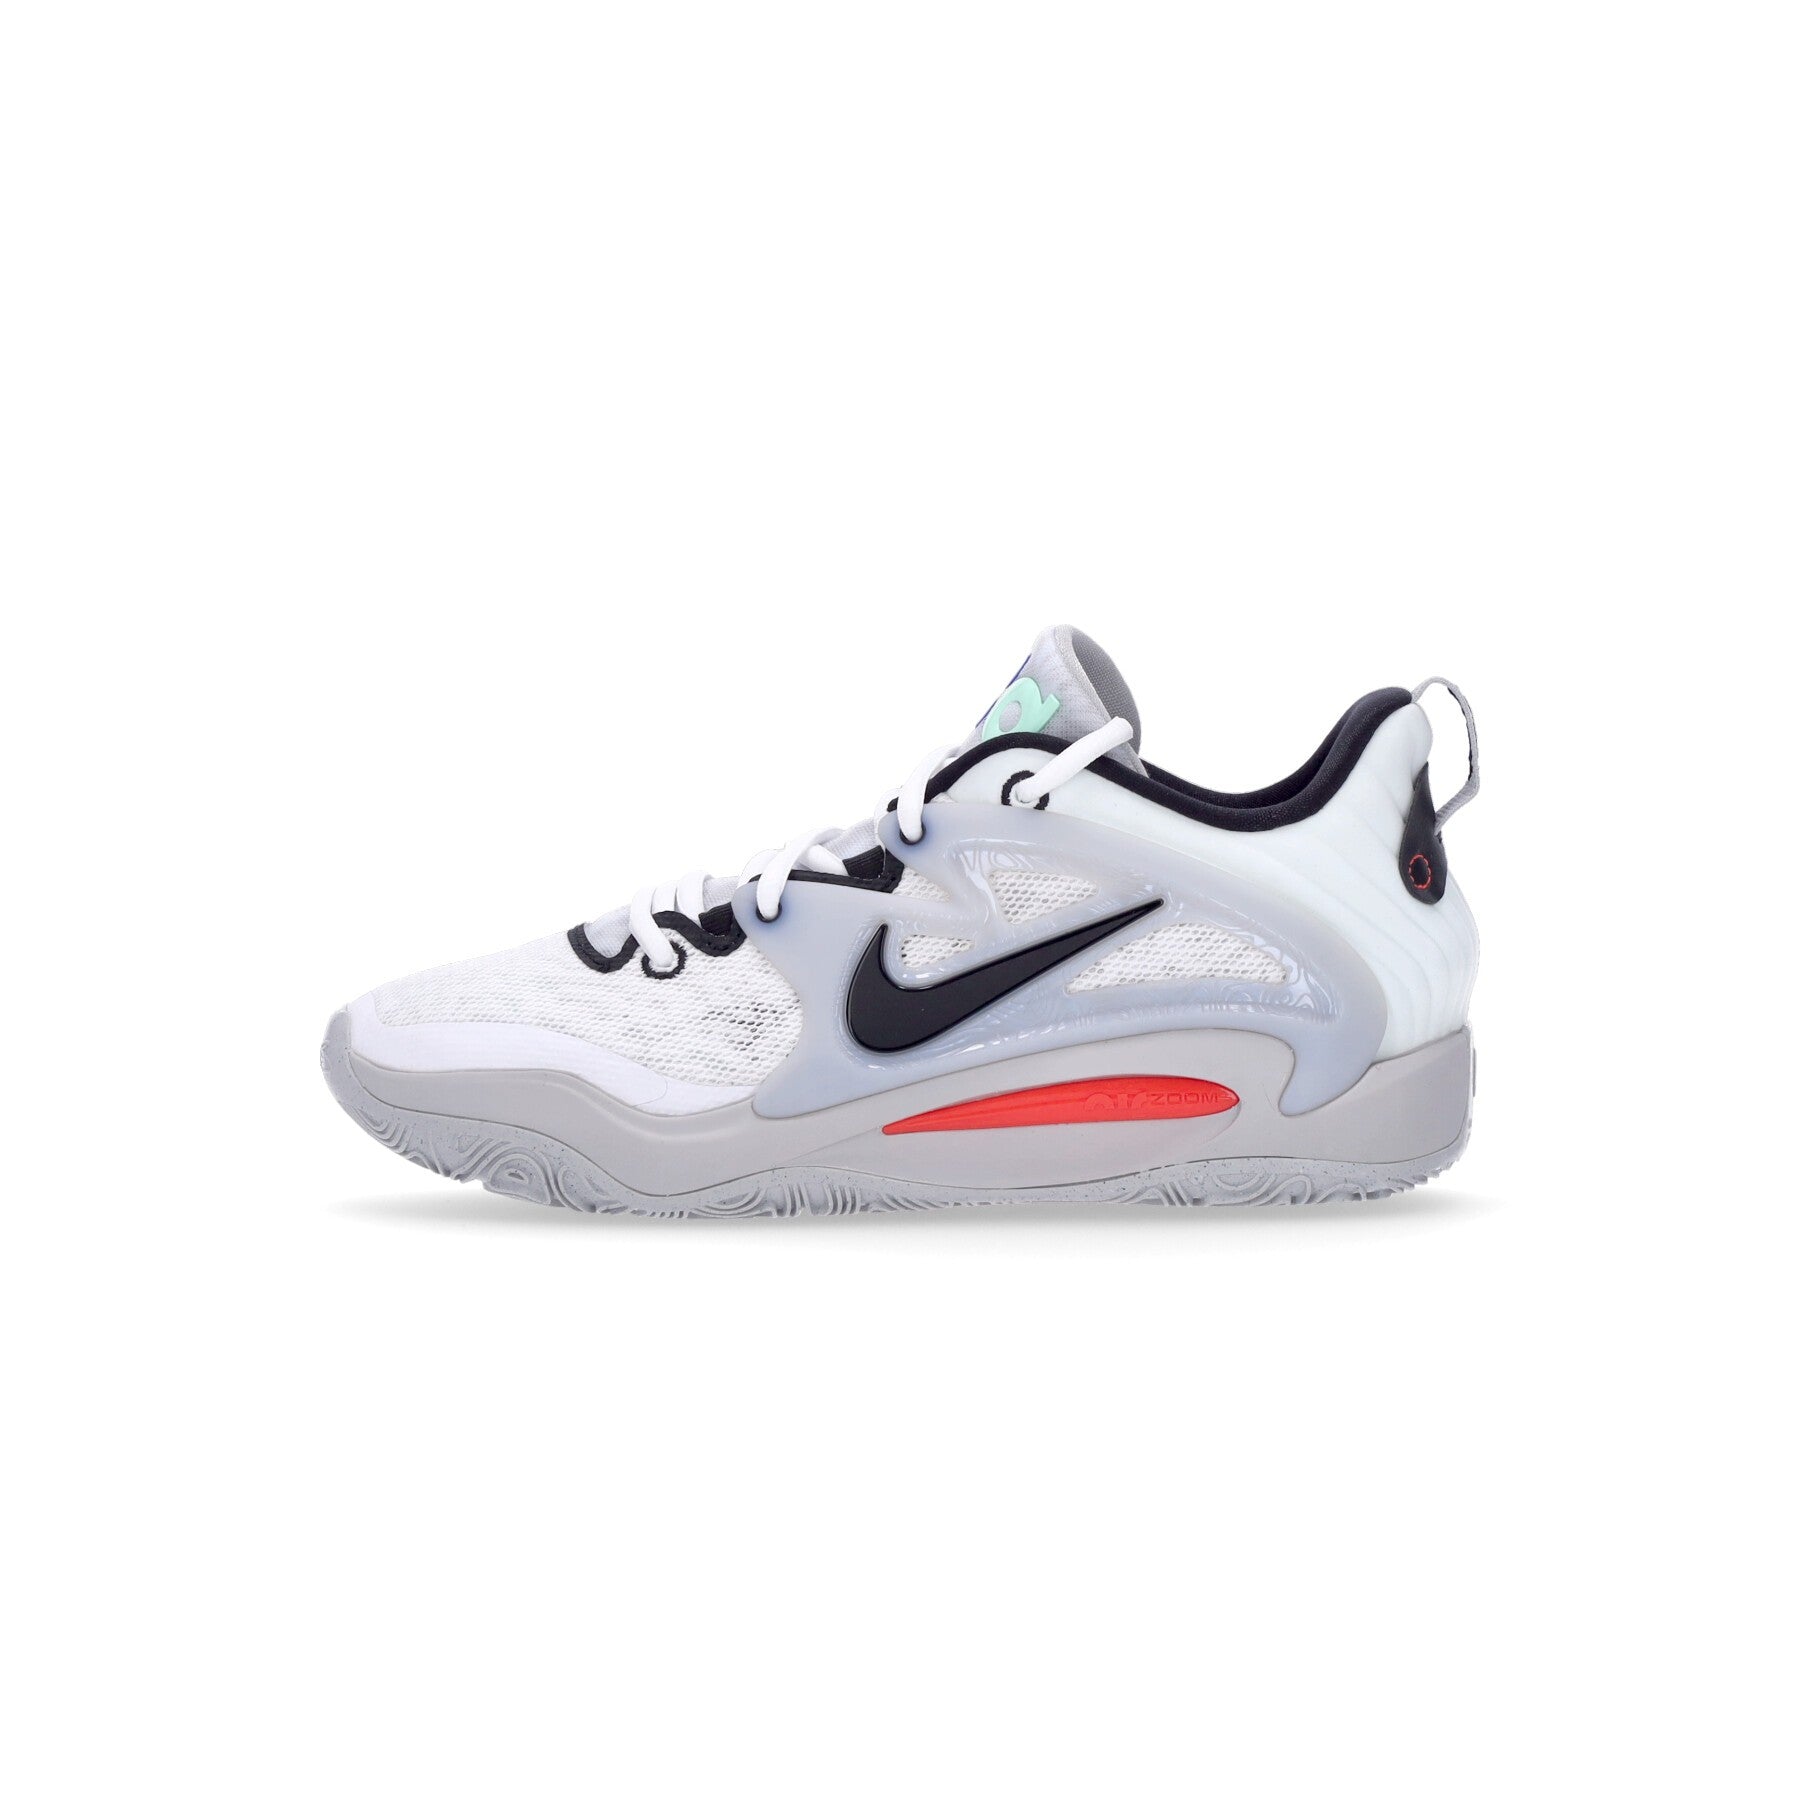 Men's Basketball Shoe Kd15 White/black/grey Fog/bright Crimson